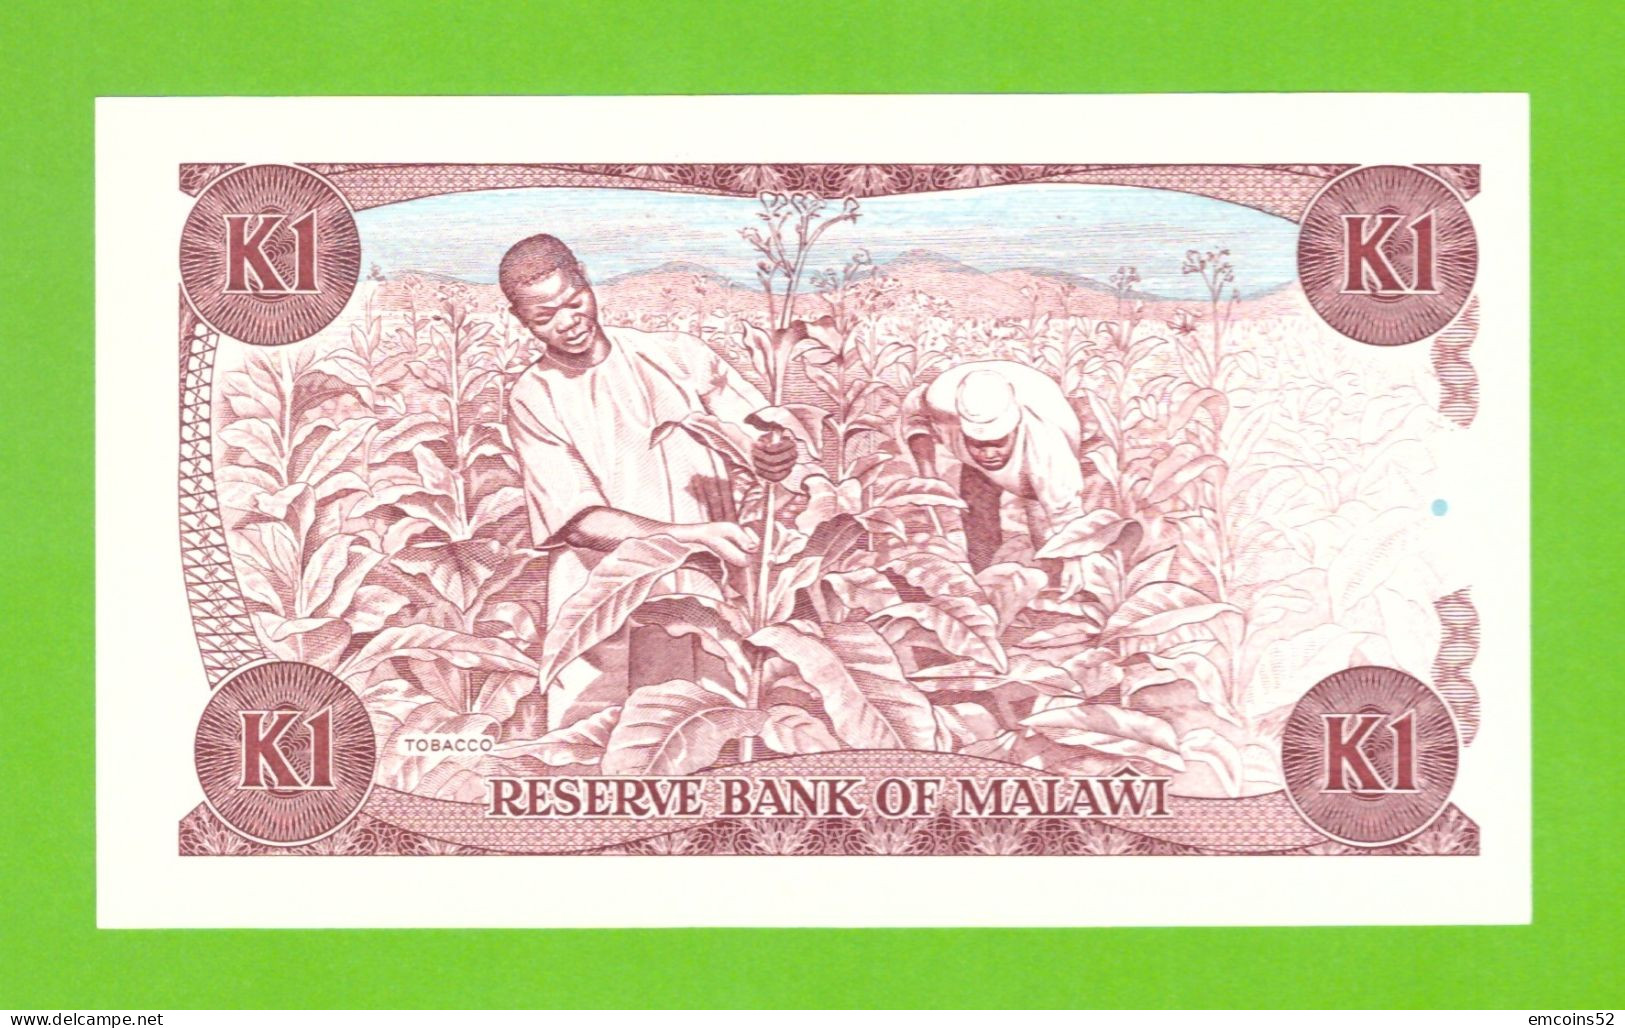 MALAWI 1 KWACHA 1988 P-19b UNC - Malawi